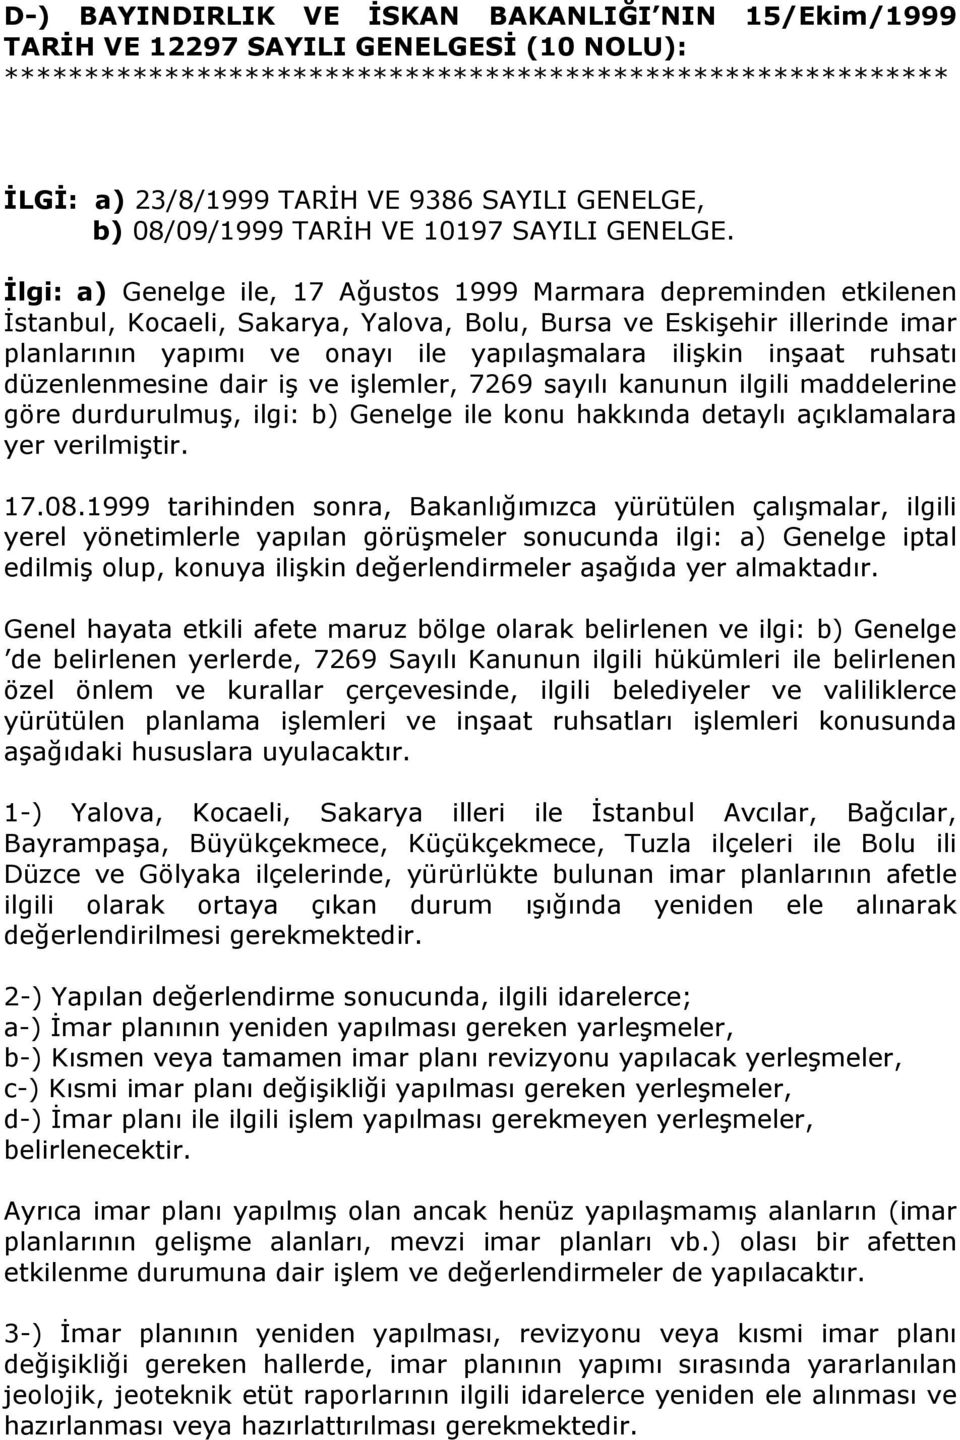 İlgi: a) Genelge ile, 17 Ağustos 1999 Marmara depreminden etkilenen İstanbul, Kocaeli, Sakarya, Yalova, Bolu, Bursa ve Eskişehir illerinde imar planlarının yapımı ve onayı ile yapılaşmalara ilişkin